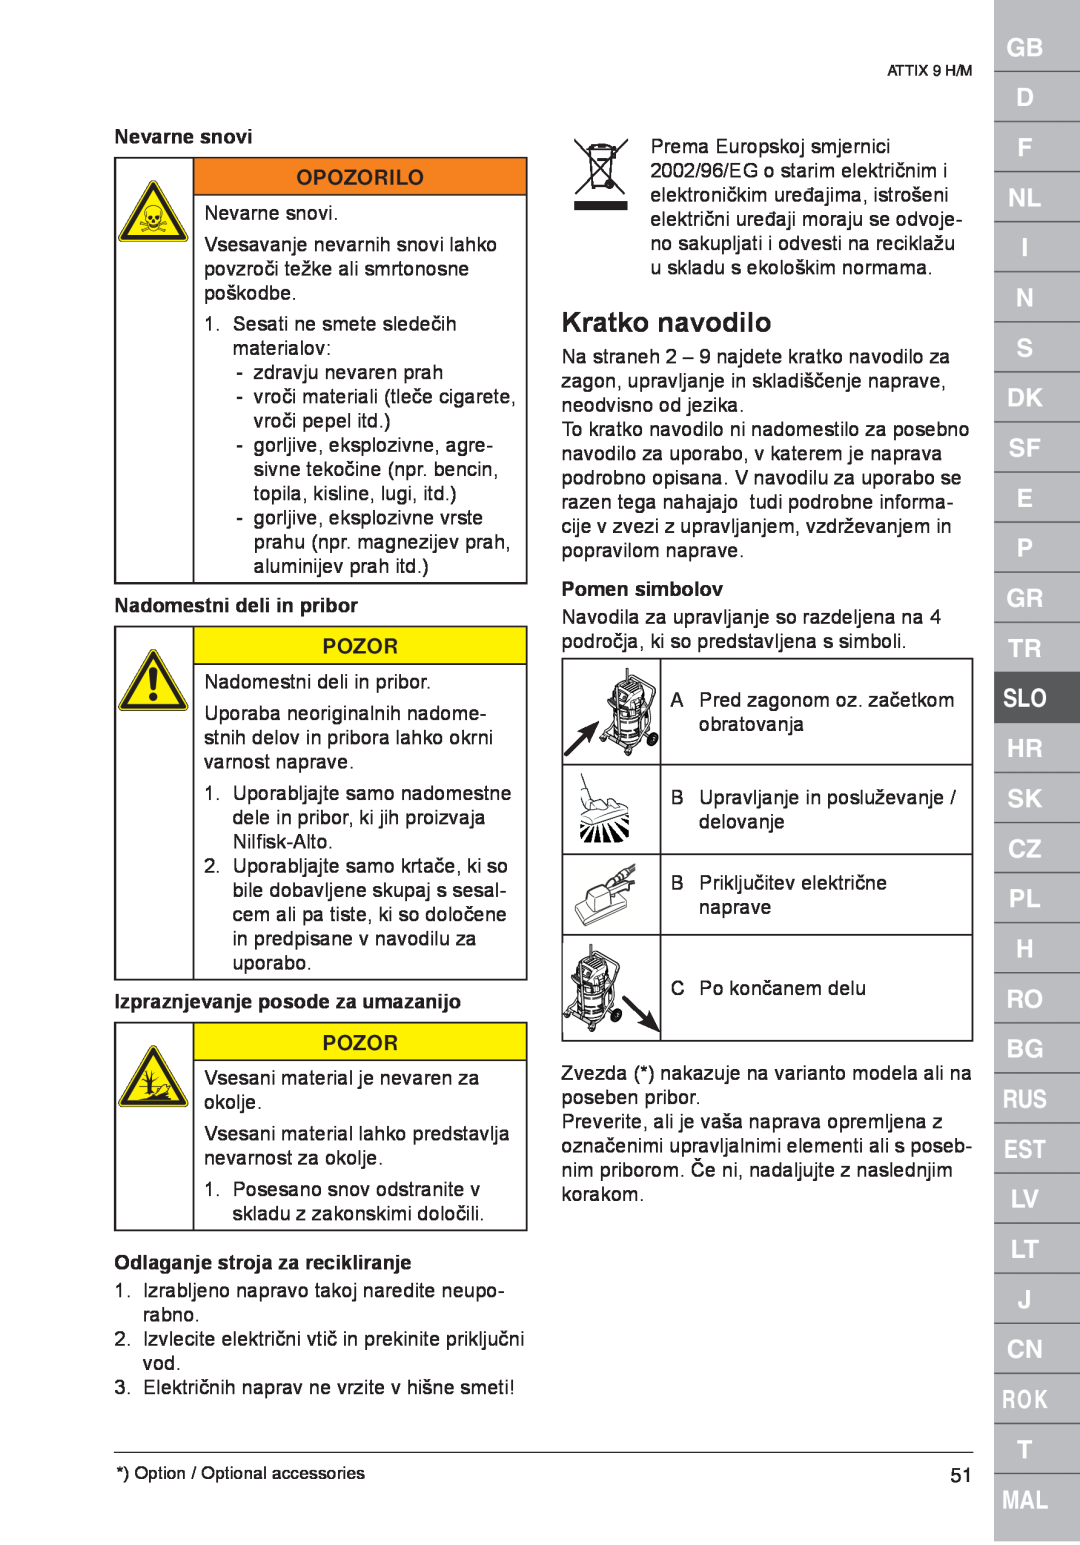 Nilfisk-ALTO ATTIX 961-01 Kratko navodilo, Nevarne snovi, Nadomestni deli in pribor, Izpraznjevanje posode za umazanijo 